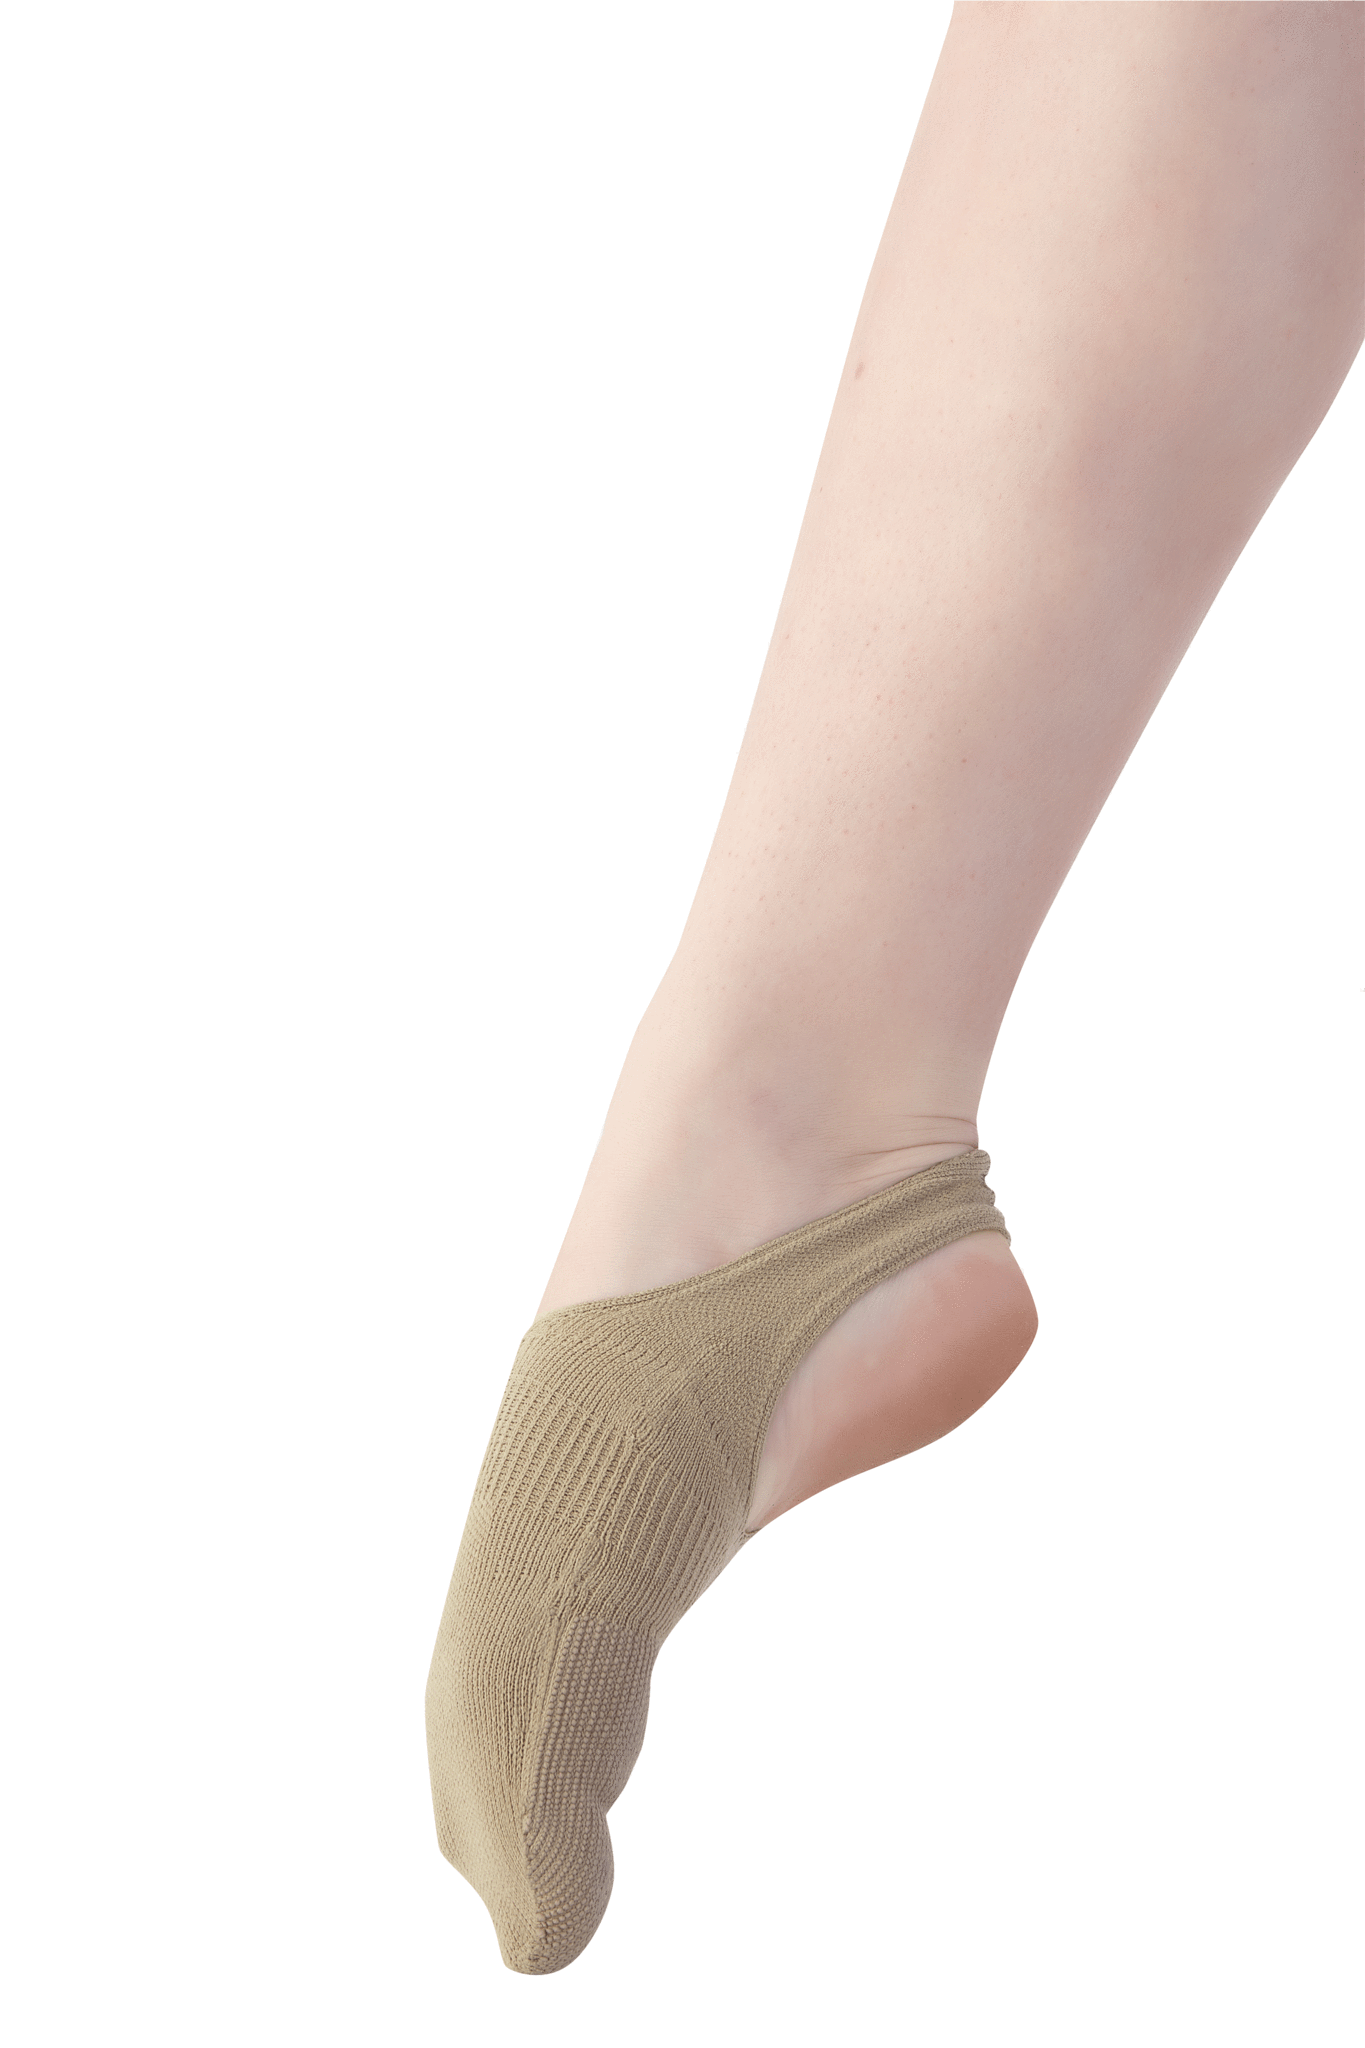 dance socks for smooth floors